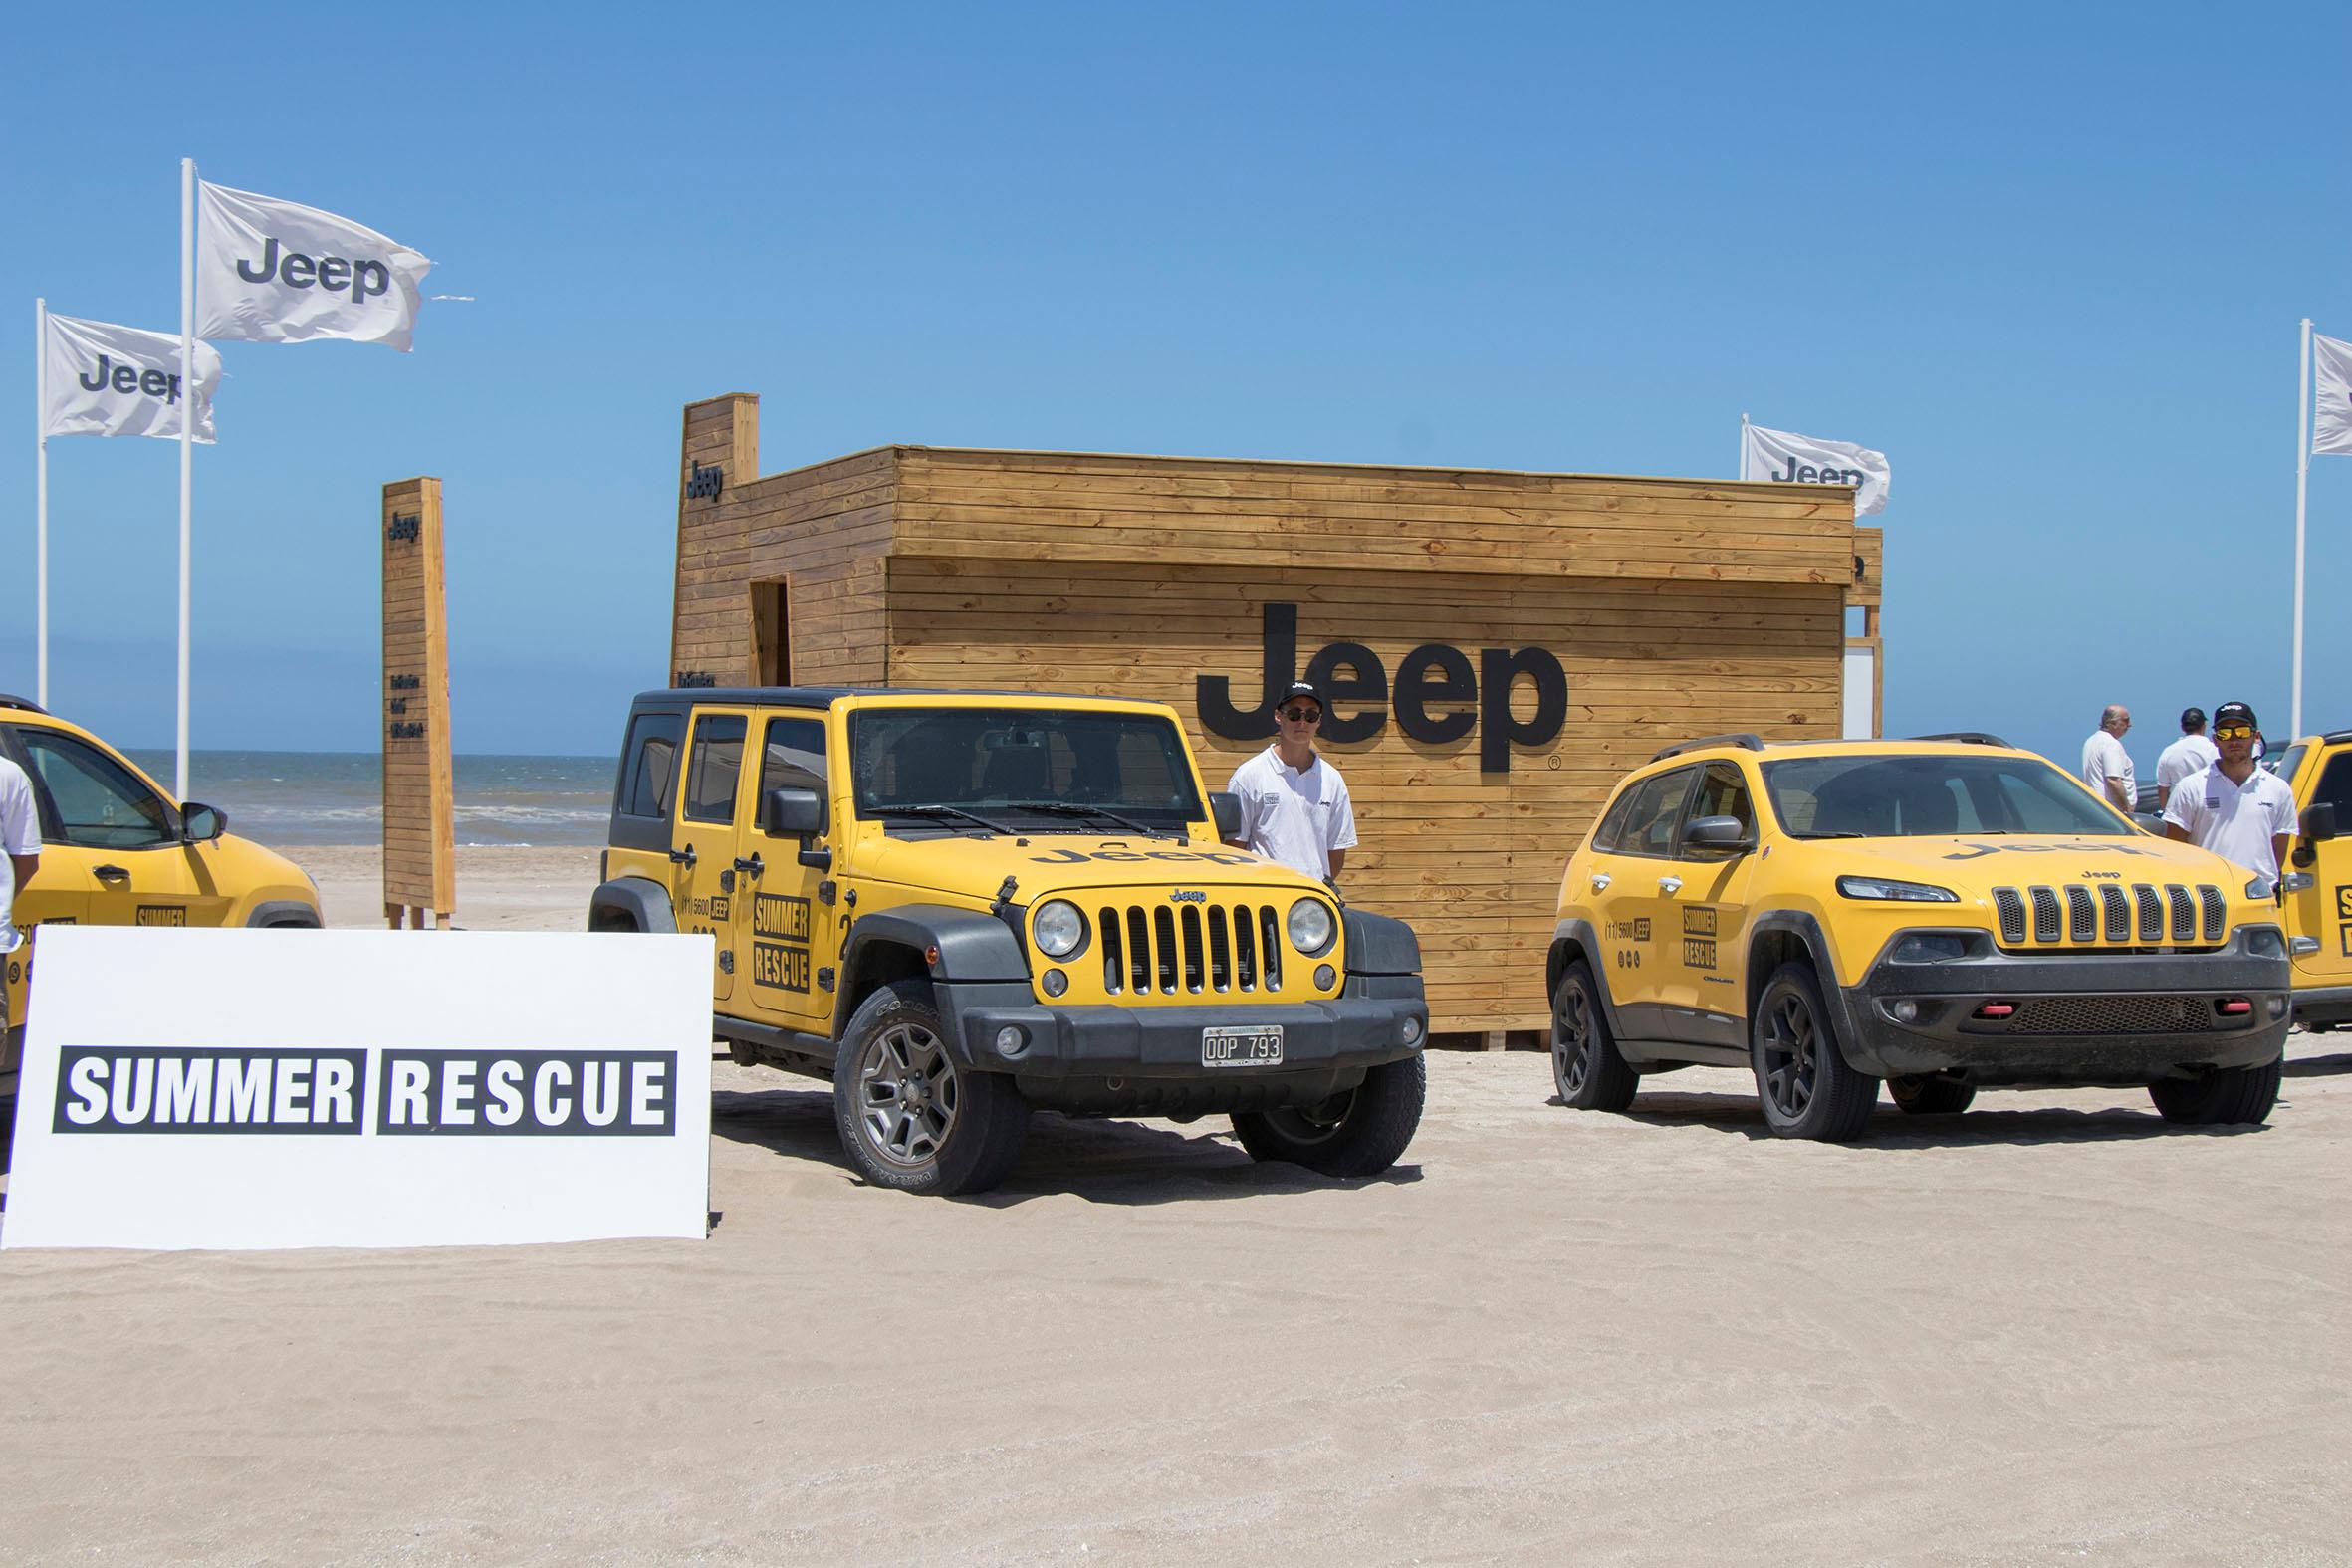 Portada de “Jeep Summer Rescue”, el primer trabajo de Smash para Jeep